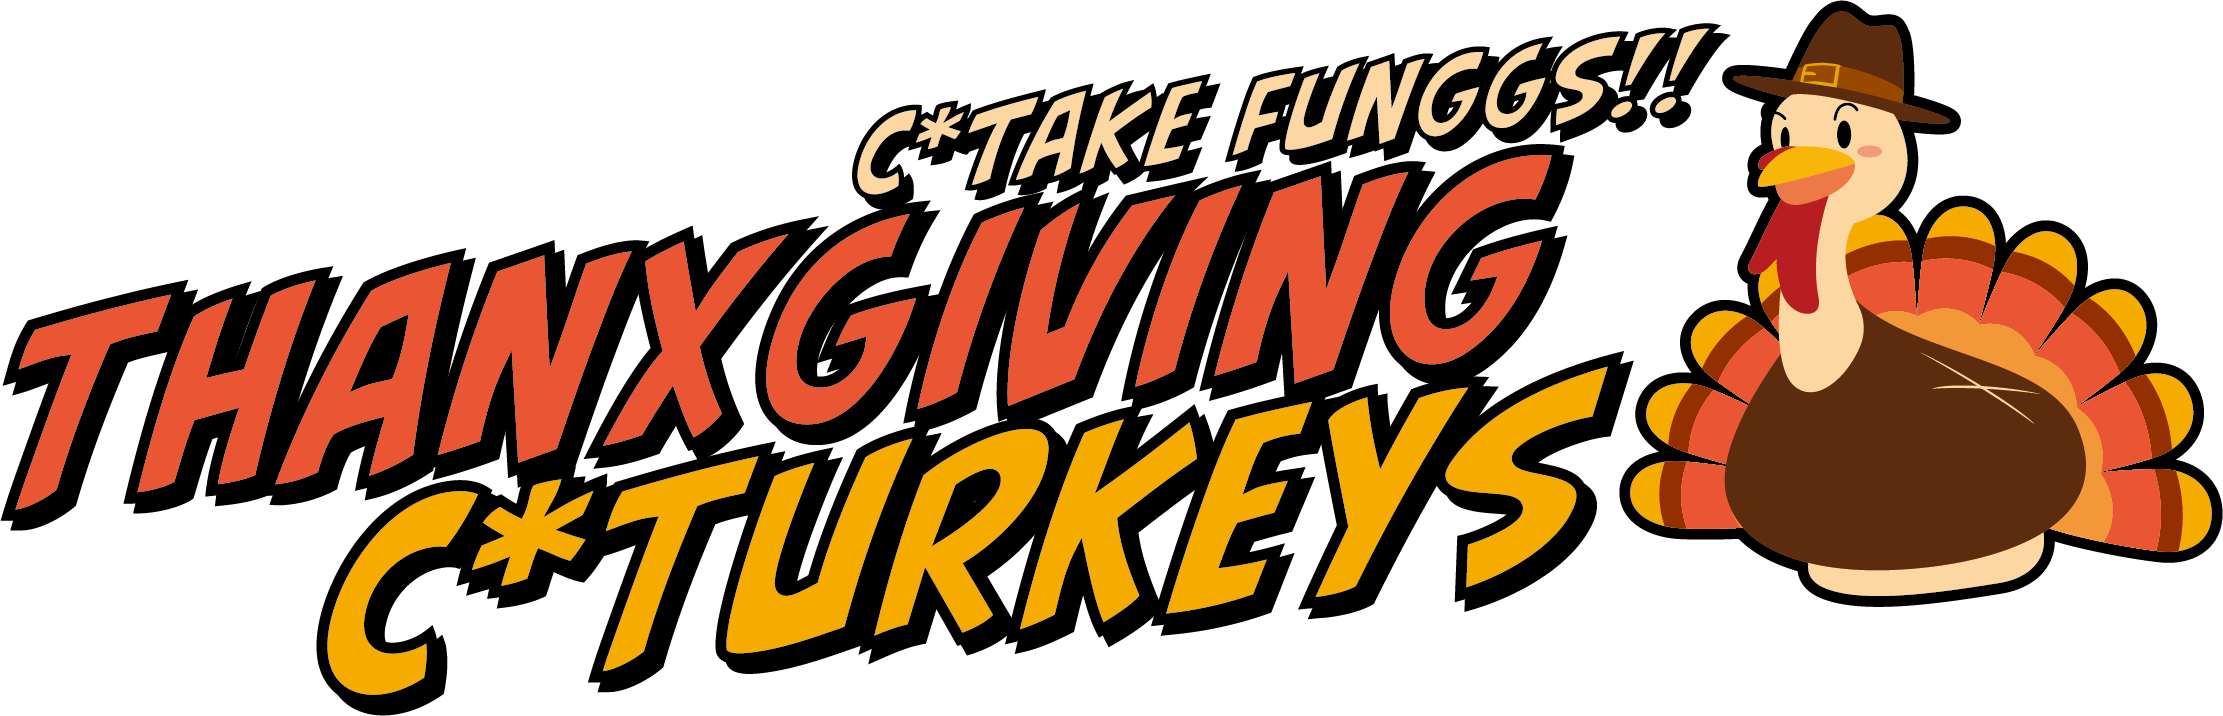 c*take funggs!! : THANXGIVING c*TURKEYS